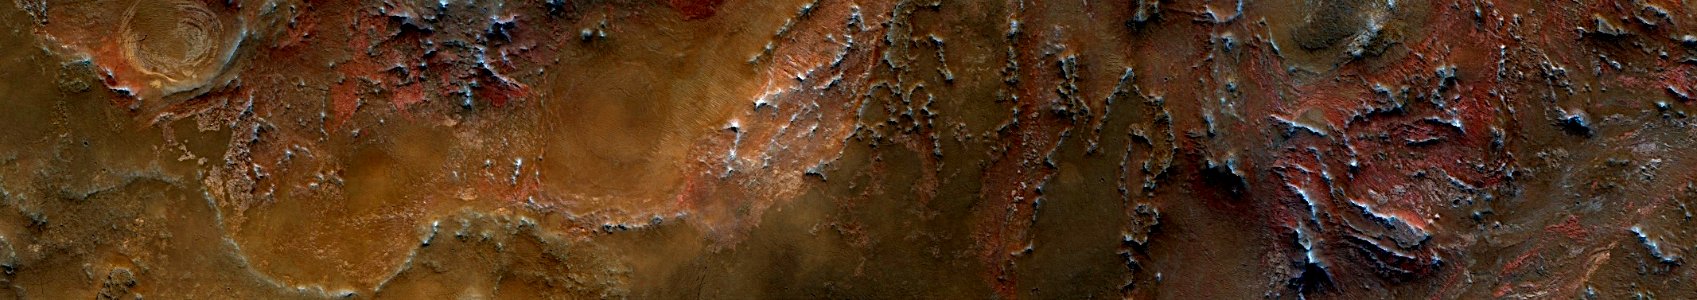 Mars - Nili Fossae photo